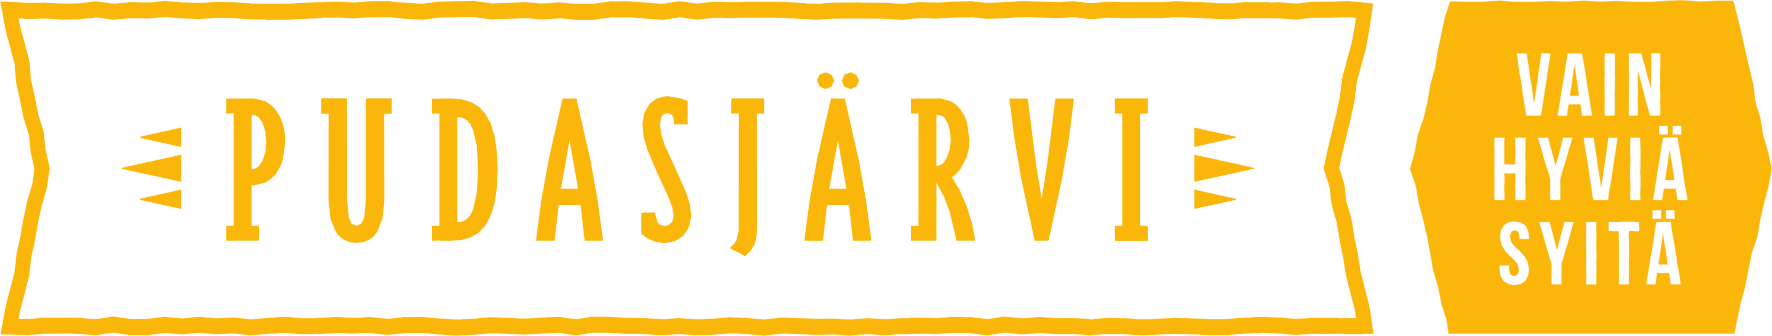 Pudasjärven logo, okra